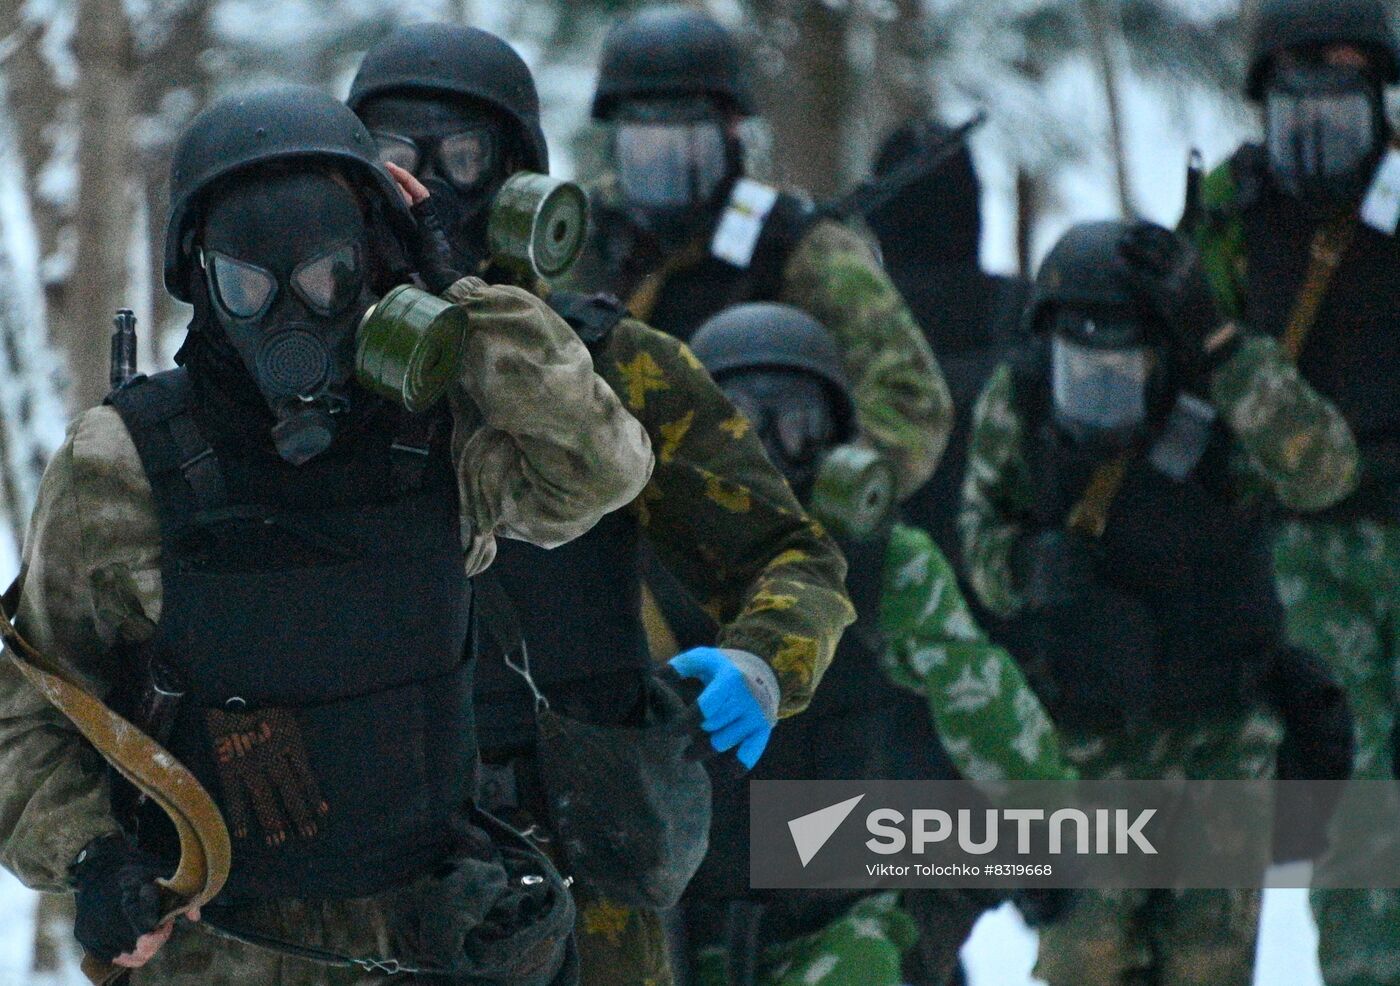 Belarus Riot Police Qualification Tests